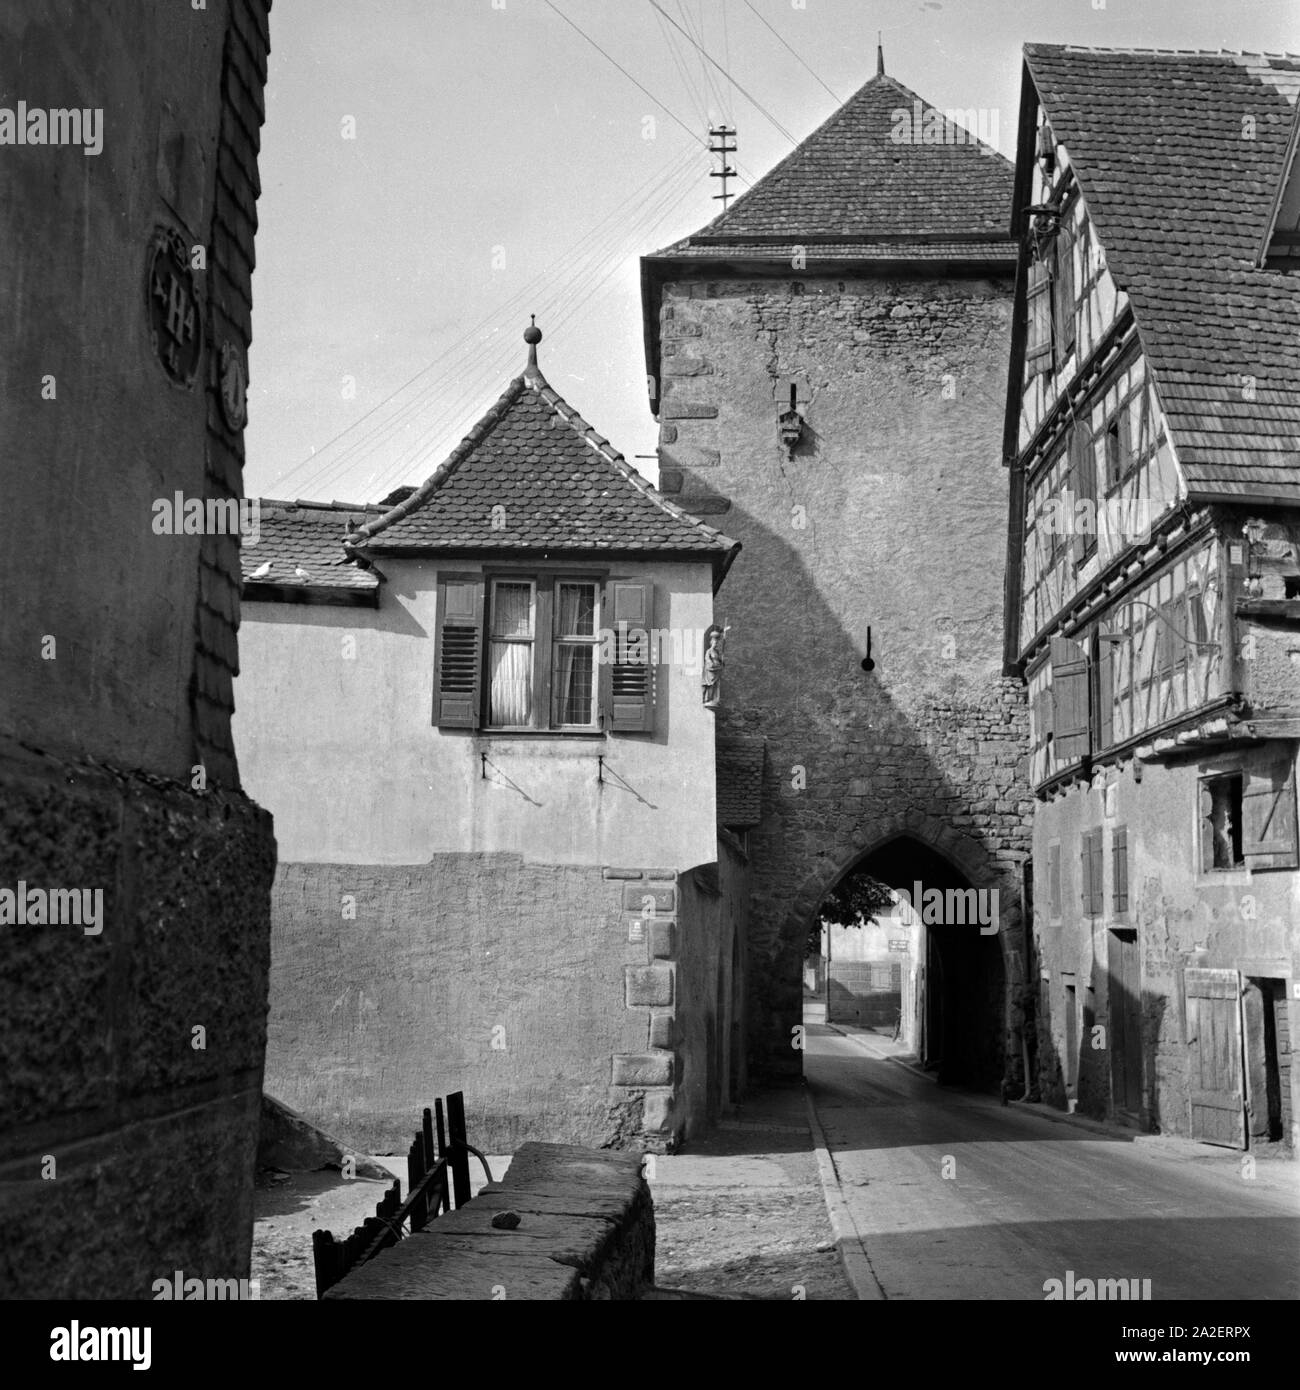 Altstadt Häusergruppe mit Stadttor in Horb am Neckar, Deutschland 1930er Jahre. Vecchie case di città con una vecchia porta della città a Horb al fiume Neckar, Germania 1930s. Foto Stock